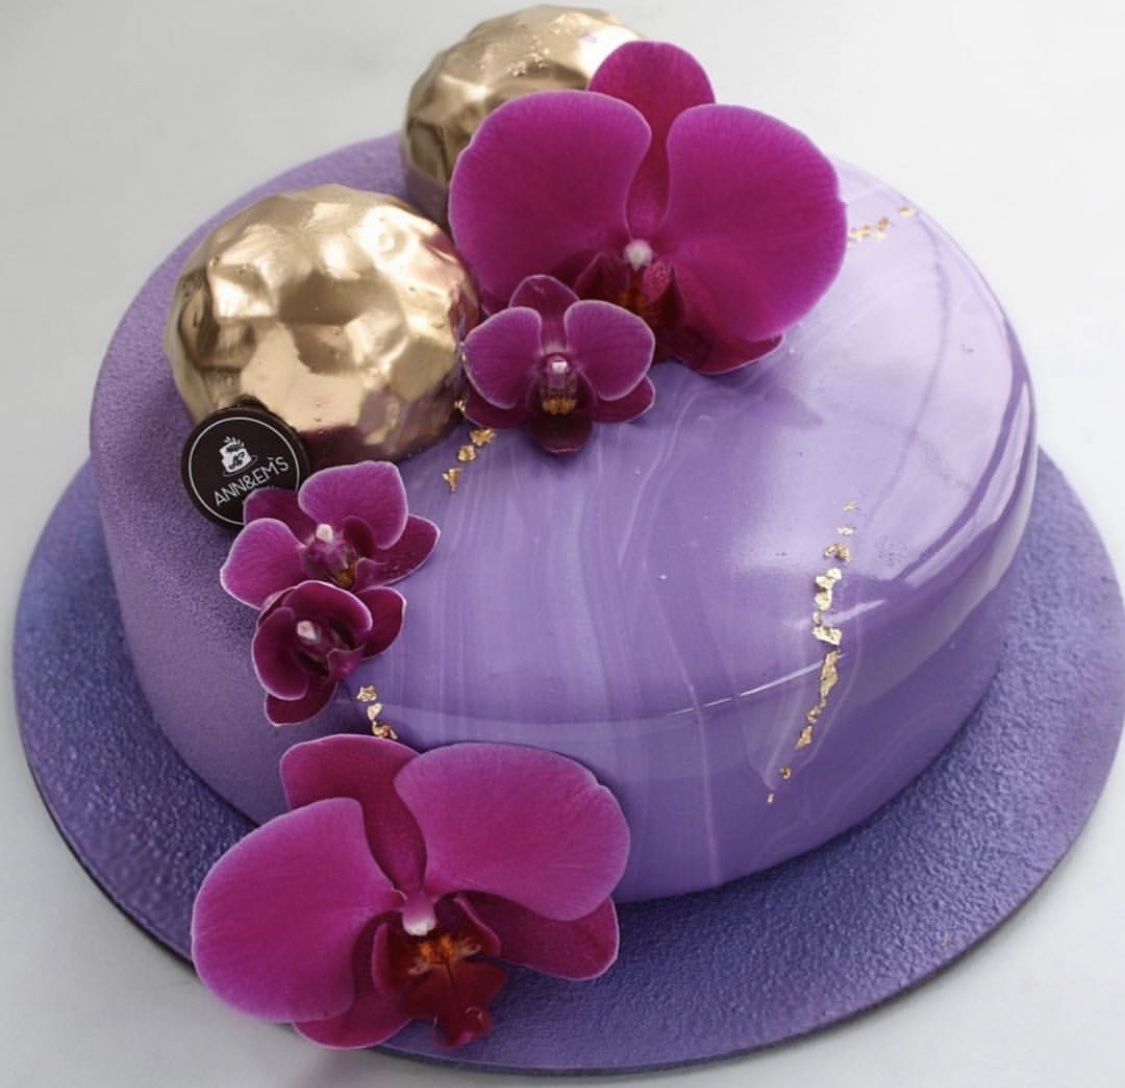 Муссовый торт с орхидеями